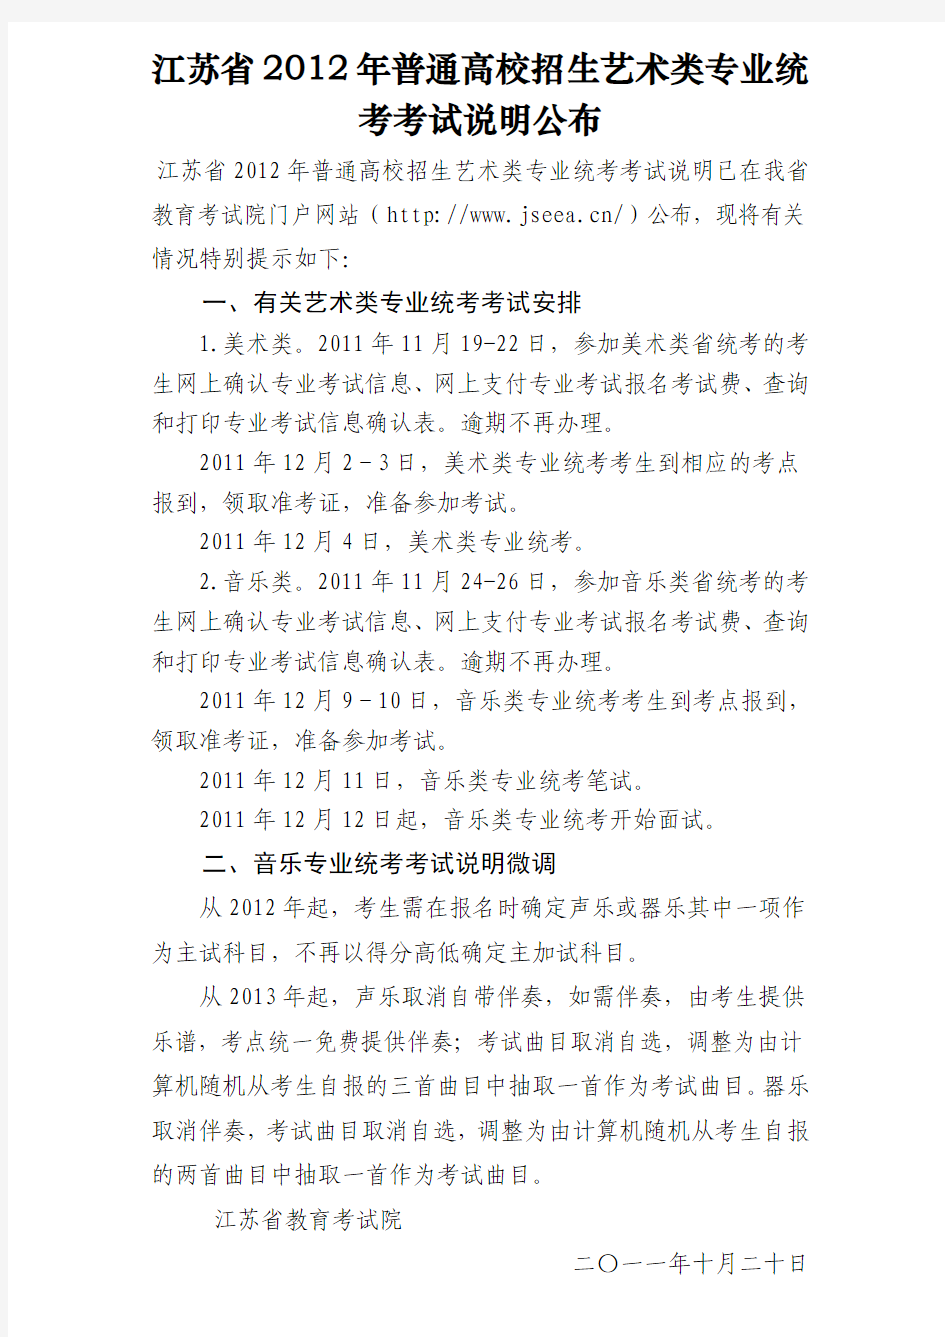 江苏省2012年普通高校招生艺术类专业统考考试说明公布